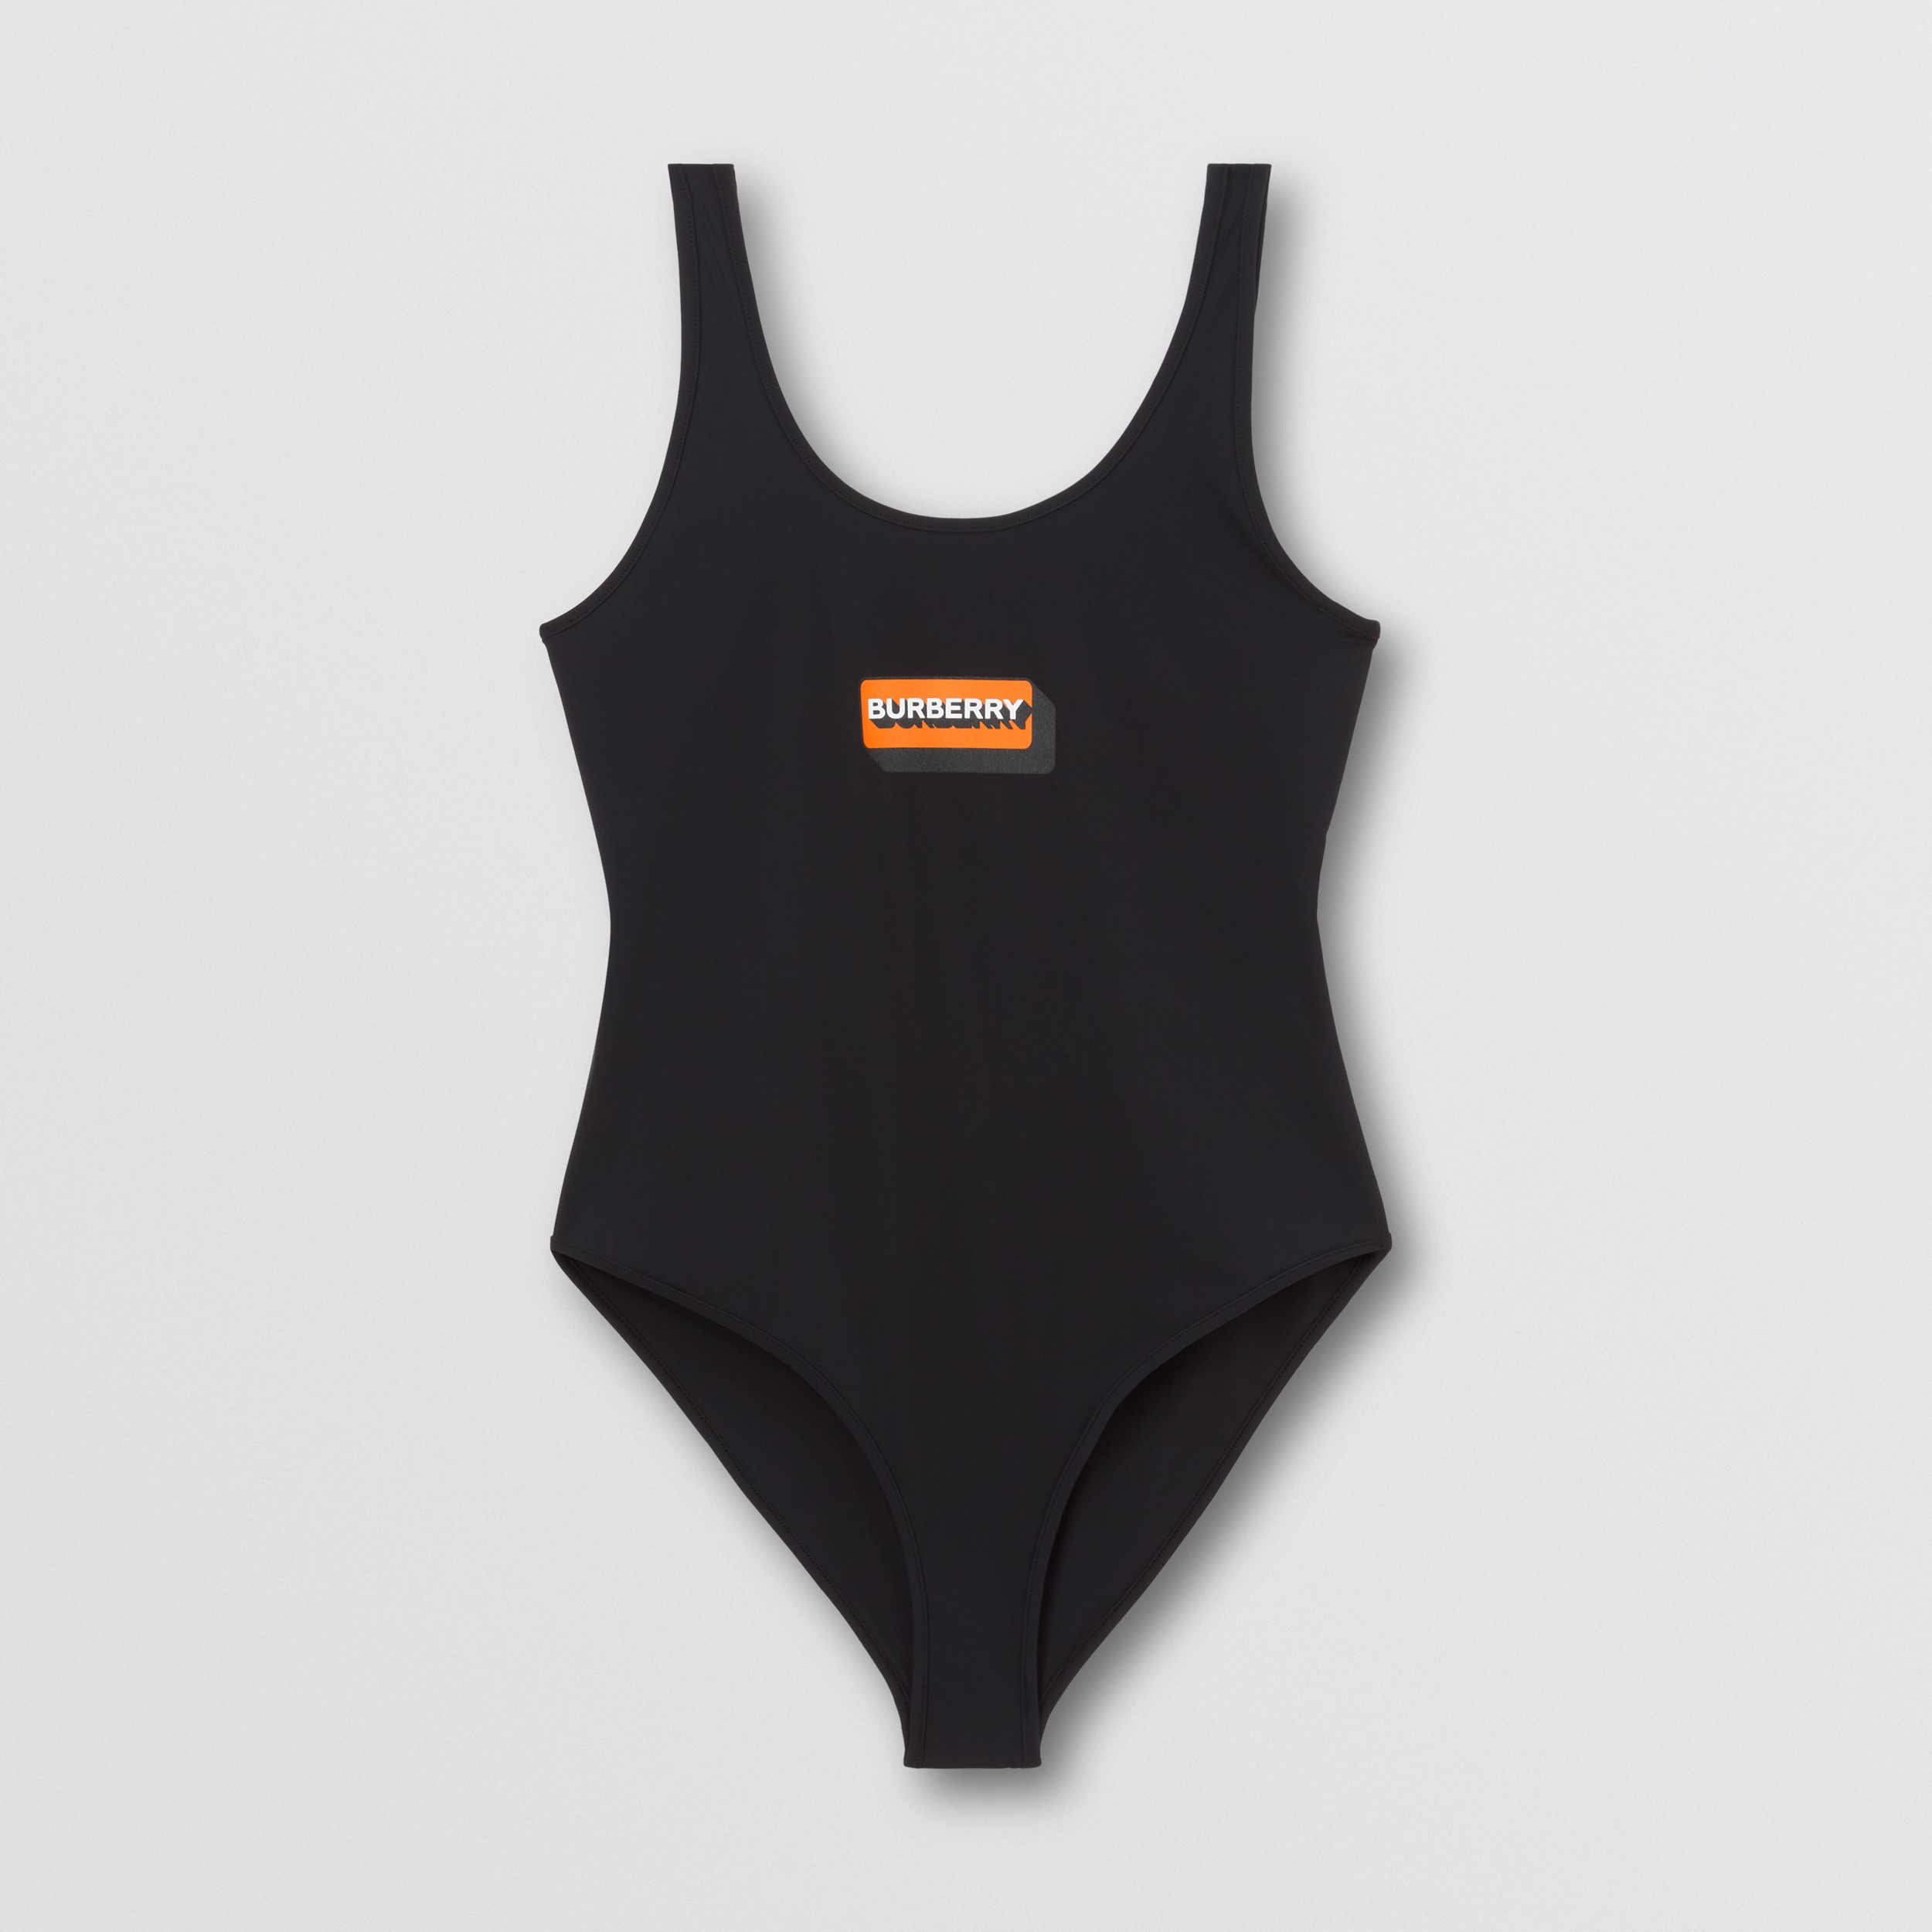 Stretchnylon-Badeanzug mit Burberry-Logo (Schwarz) - Damen | Burberry® - 1